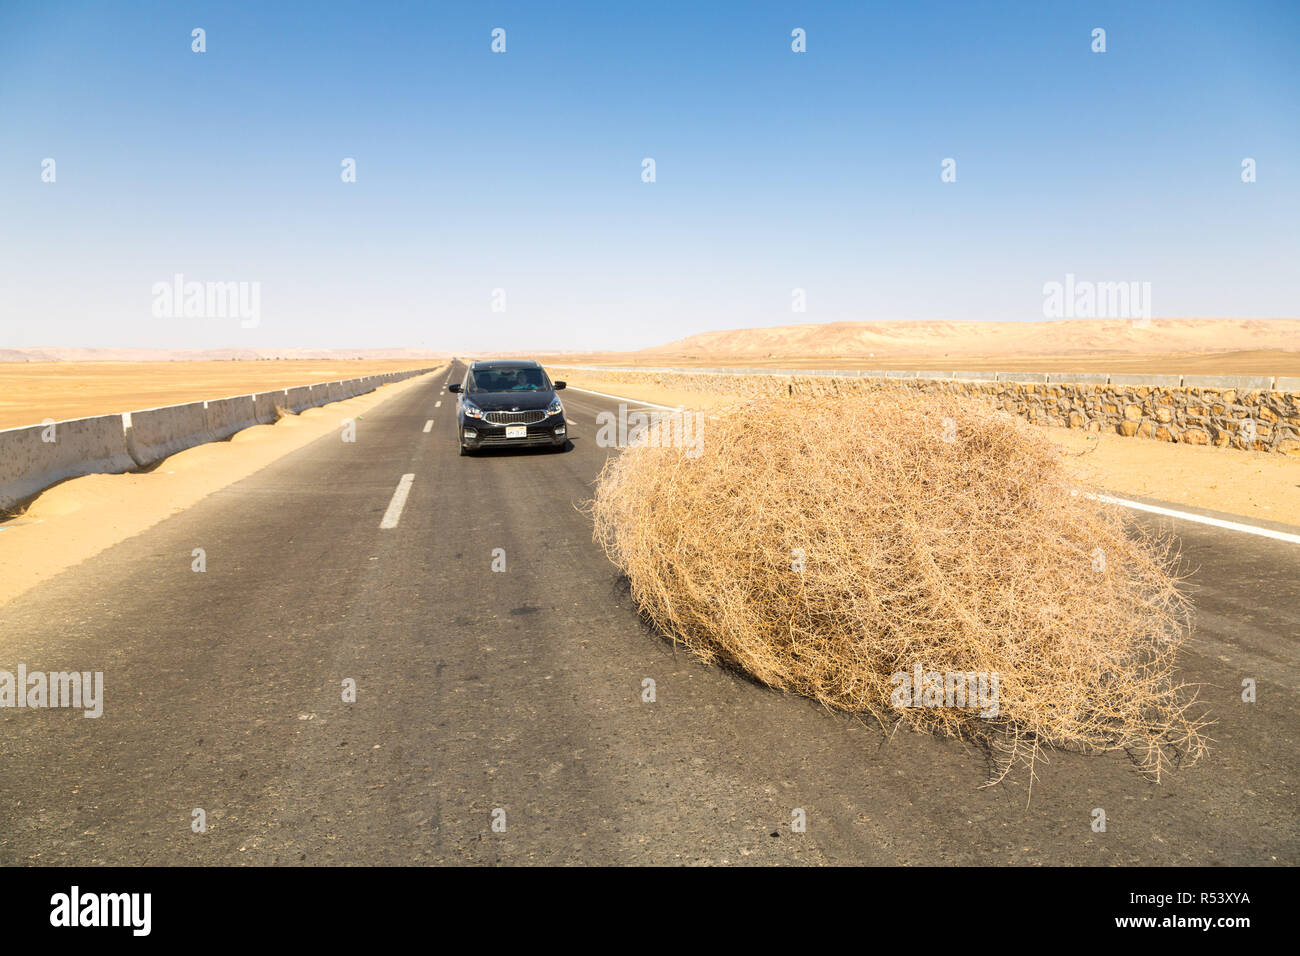 Une voiture s'est arrêtée par un géant tumbleweed sur une route avec des dunes de sable, entre l'oasis de Bahariya et Farafra, Sahara, désert occidental de l'Égypte. Banque D'Images